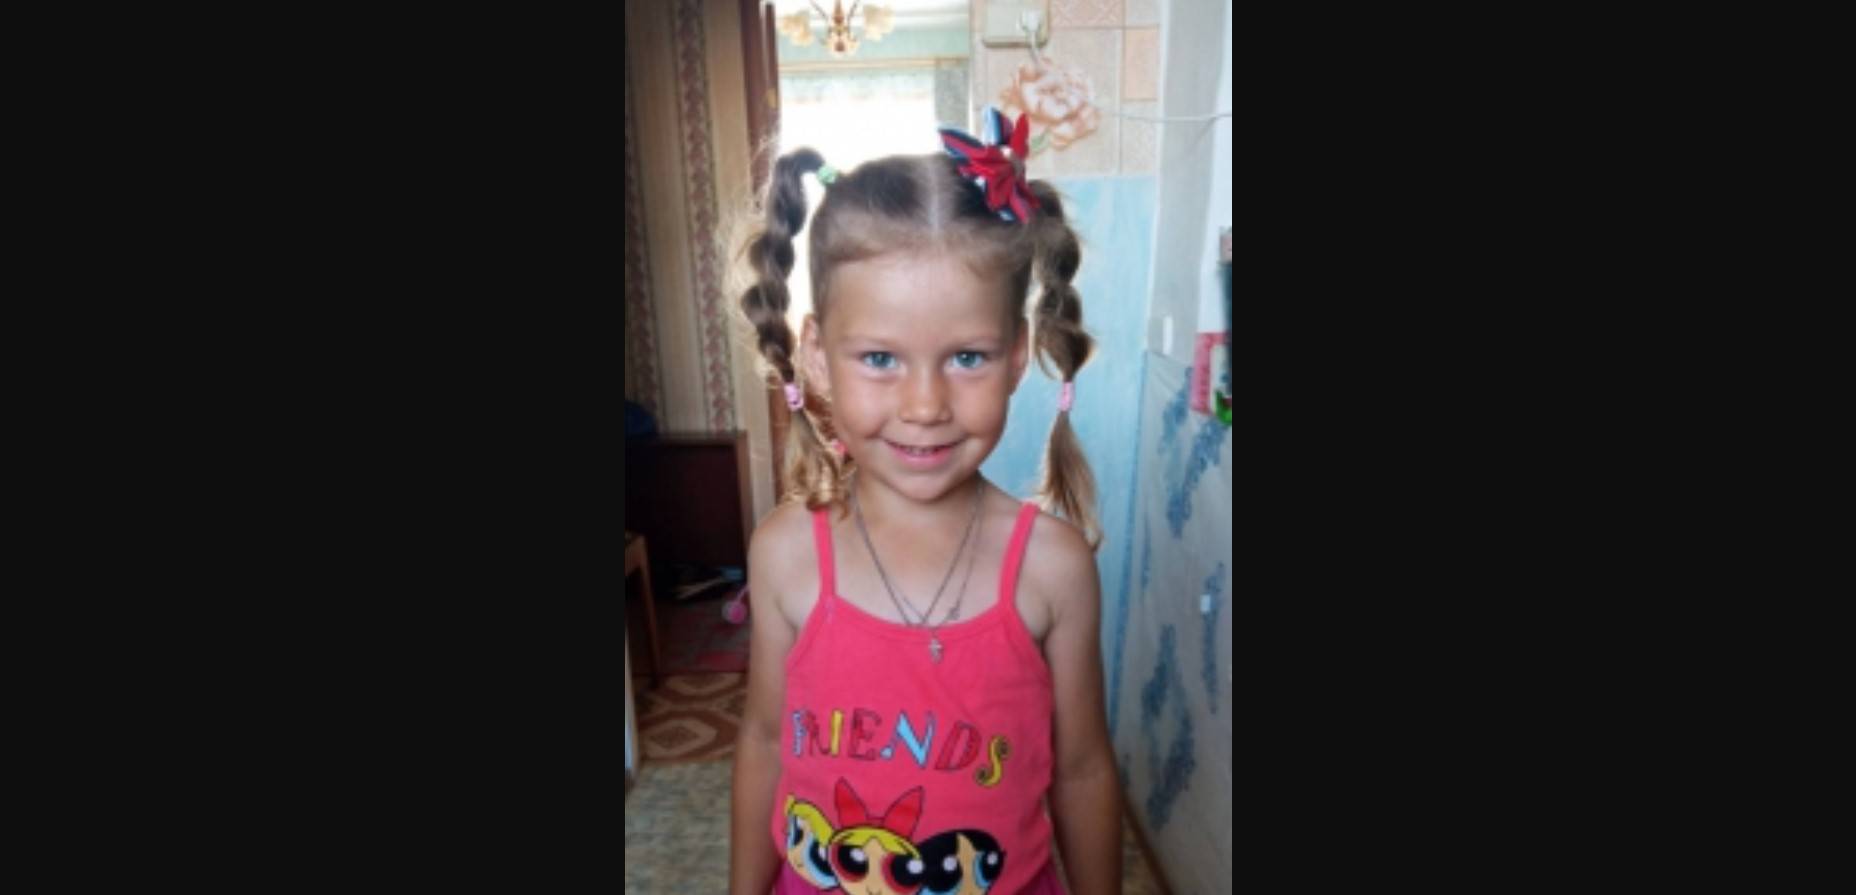 В Пермской крае пообещали полмиллиона рублей за информацию о пропавшей девочке